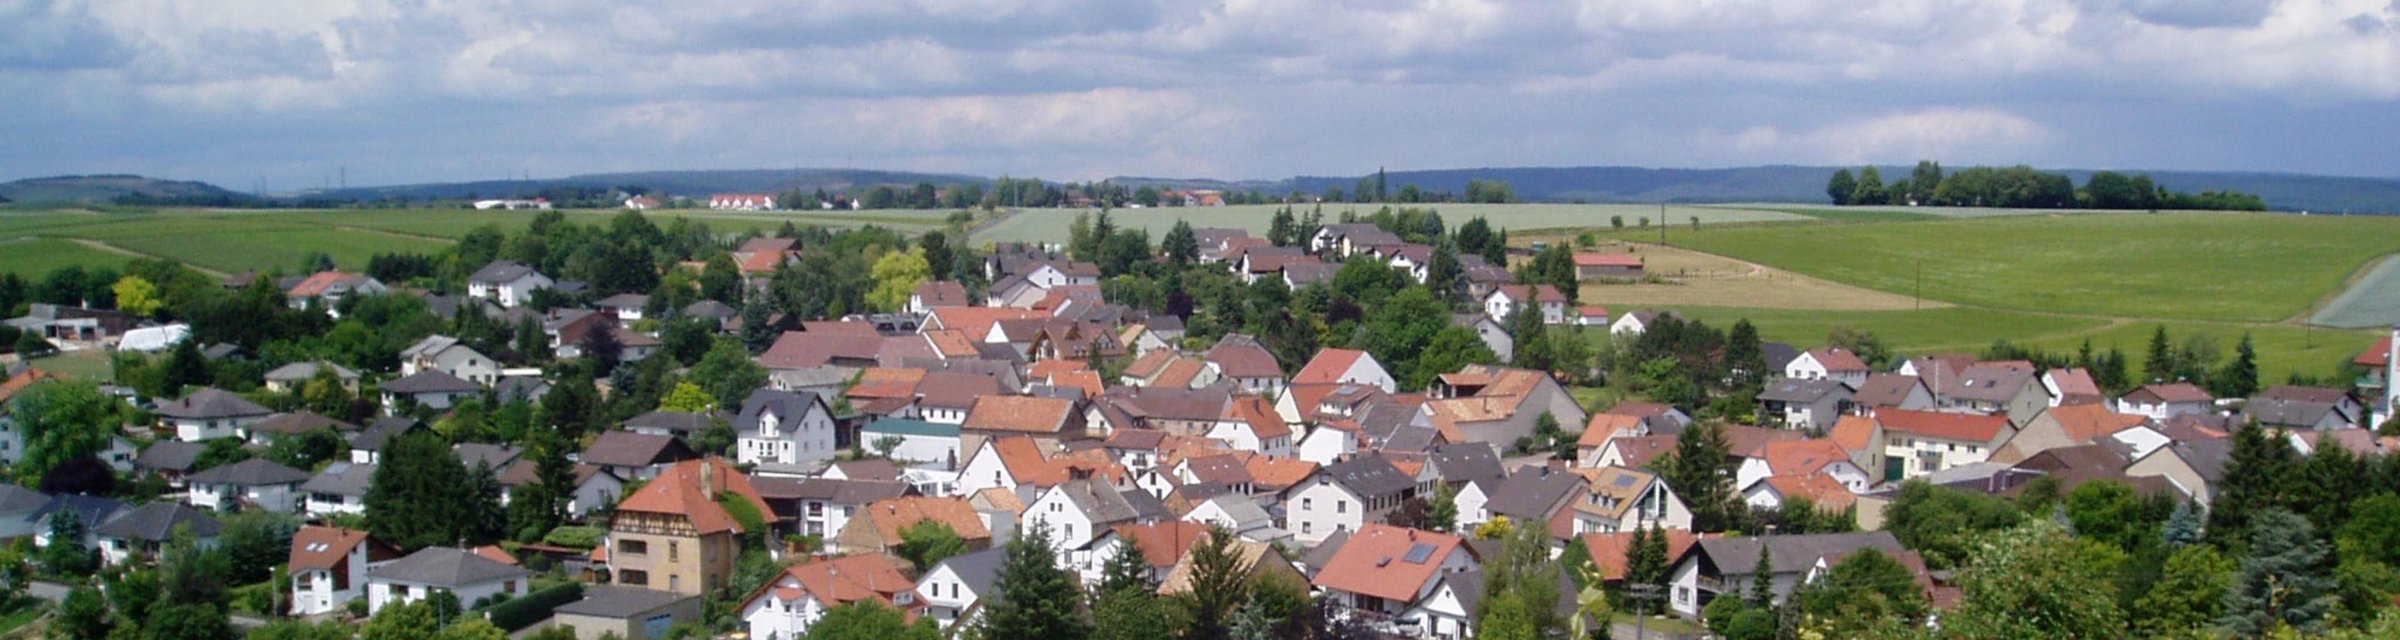 Traisen | Verbandsgemeinde Rüdesheim